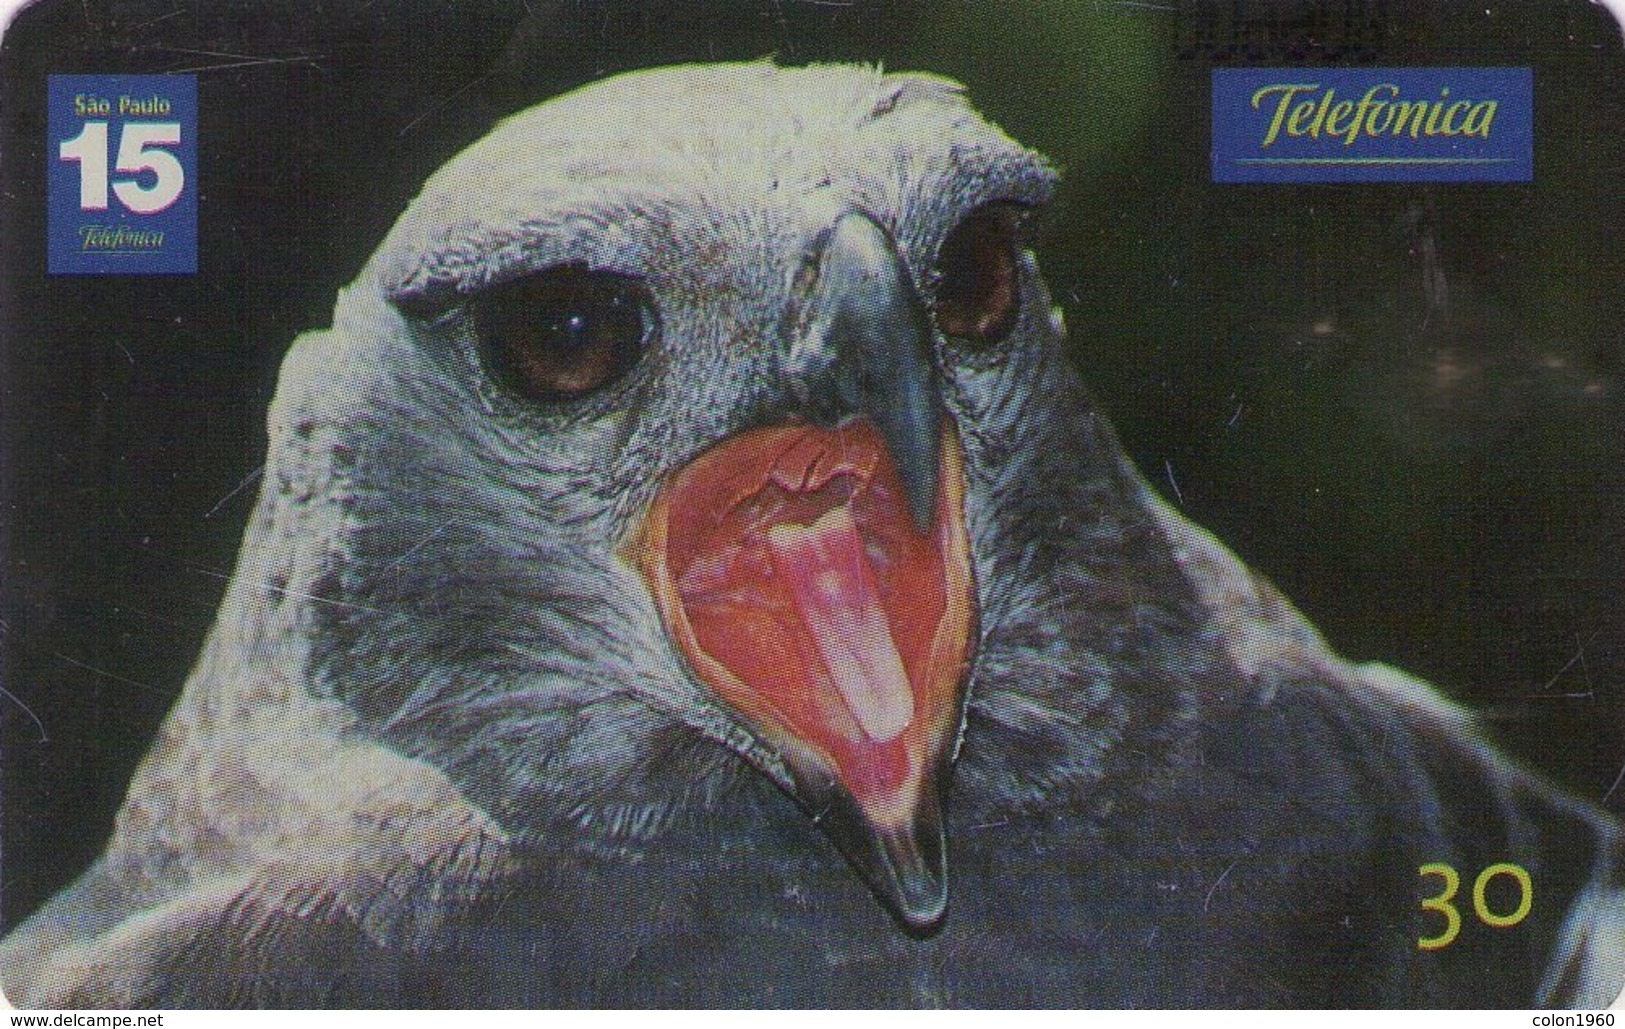 BRASIL. FAUNA. Falsa Hárpia Ou Uiraçu - 26/26 - N 32*. 2001-11. BR-TEL-BR-1201-32. (256) - Eagles & Birds Of Prey